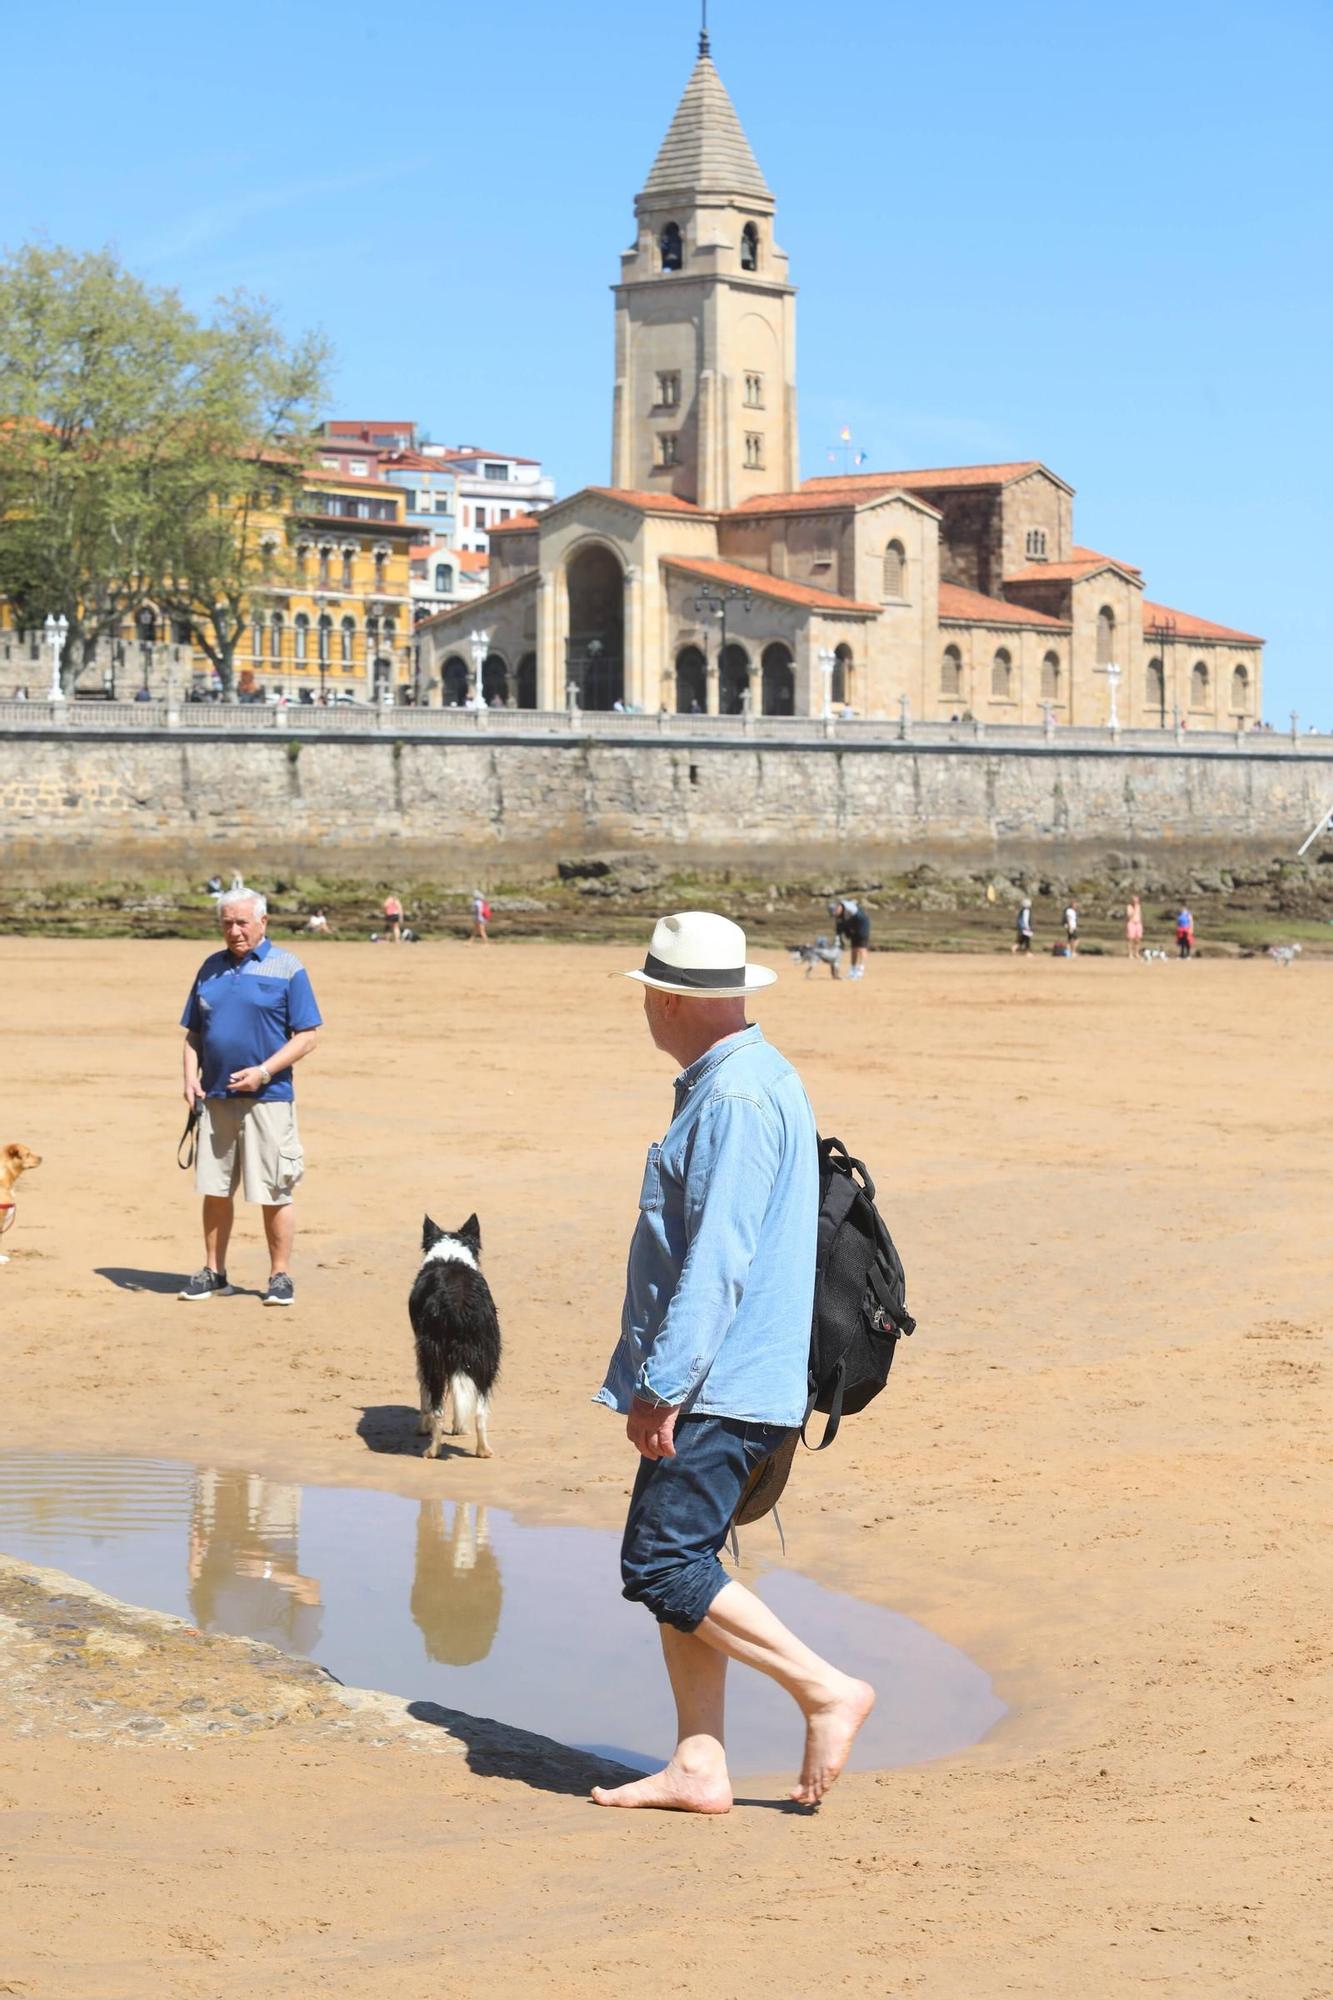 La primavera adquiere tintes veraniegos en Asturias: así fue la jornada de calor en Gijón